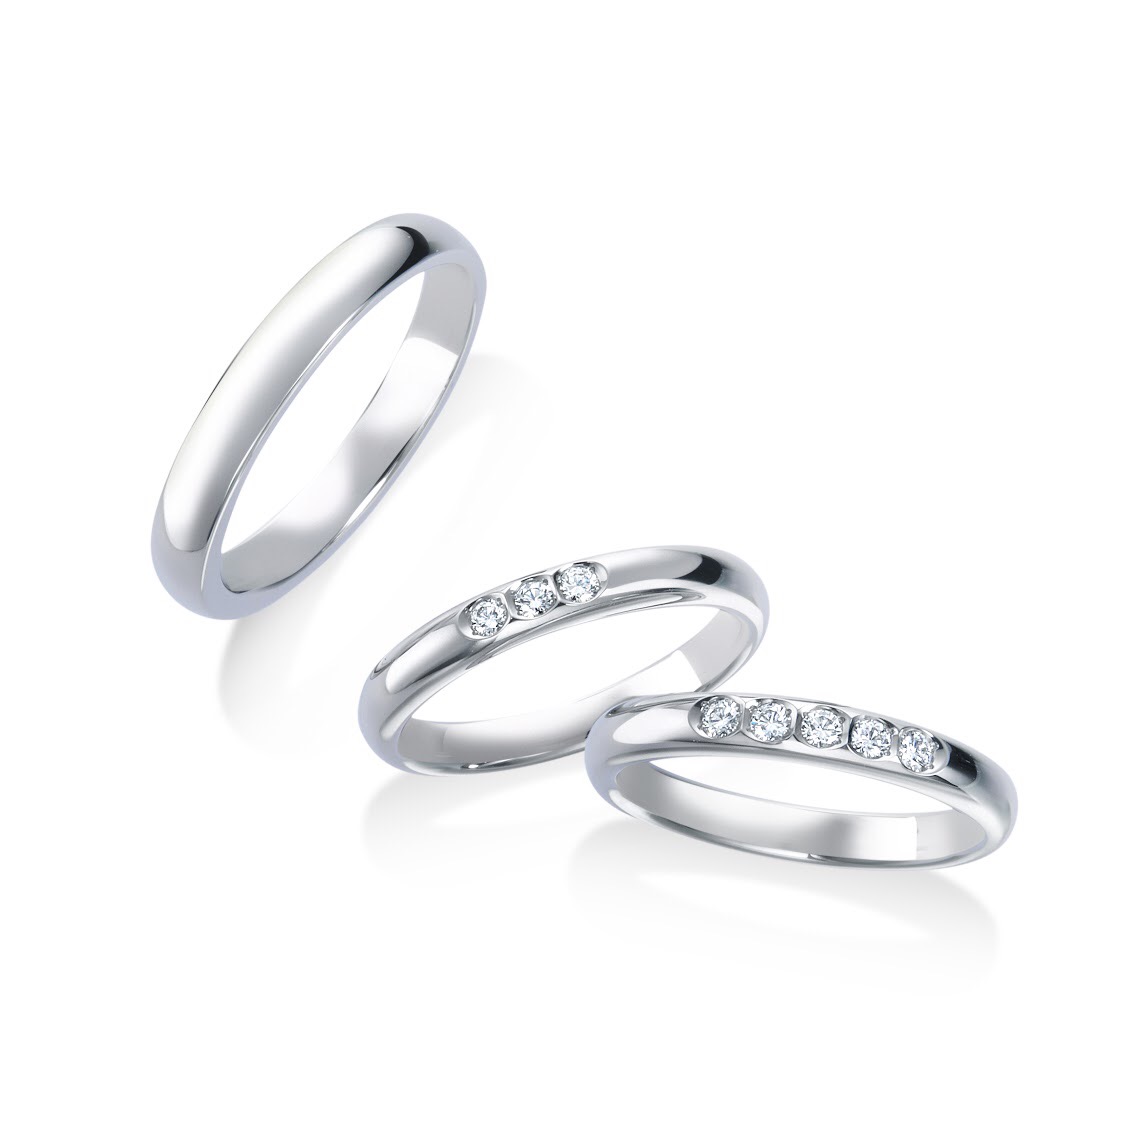 ダイヤモンドが3石 5石ついているストレートの結婚指輪